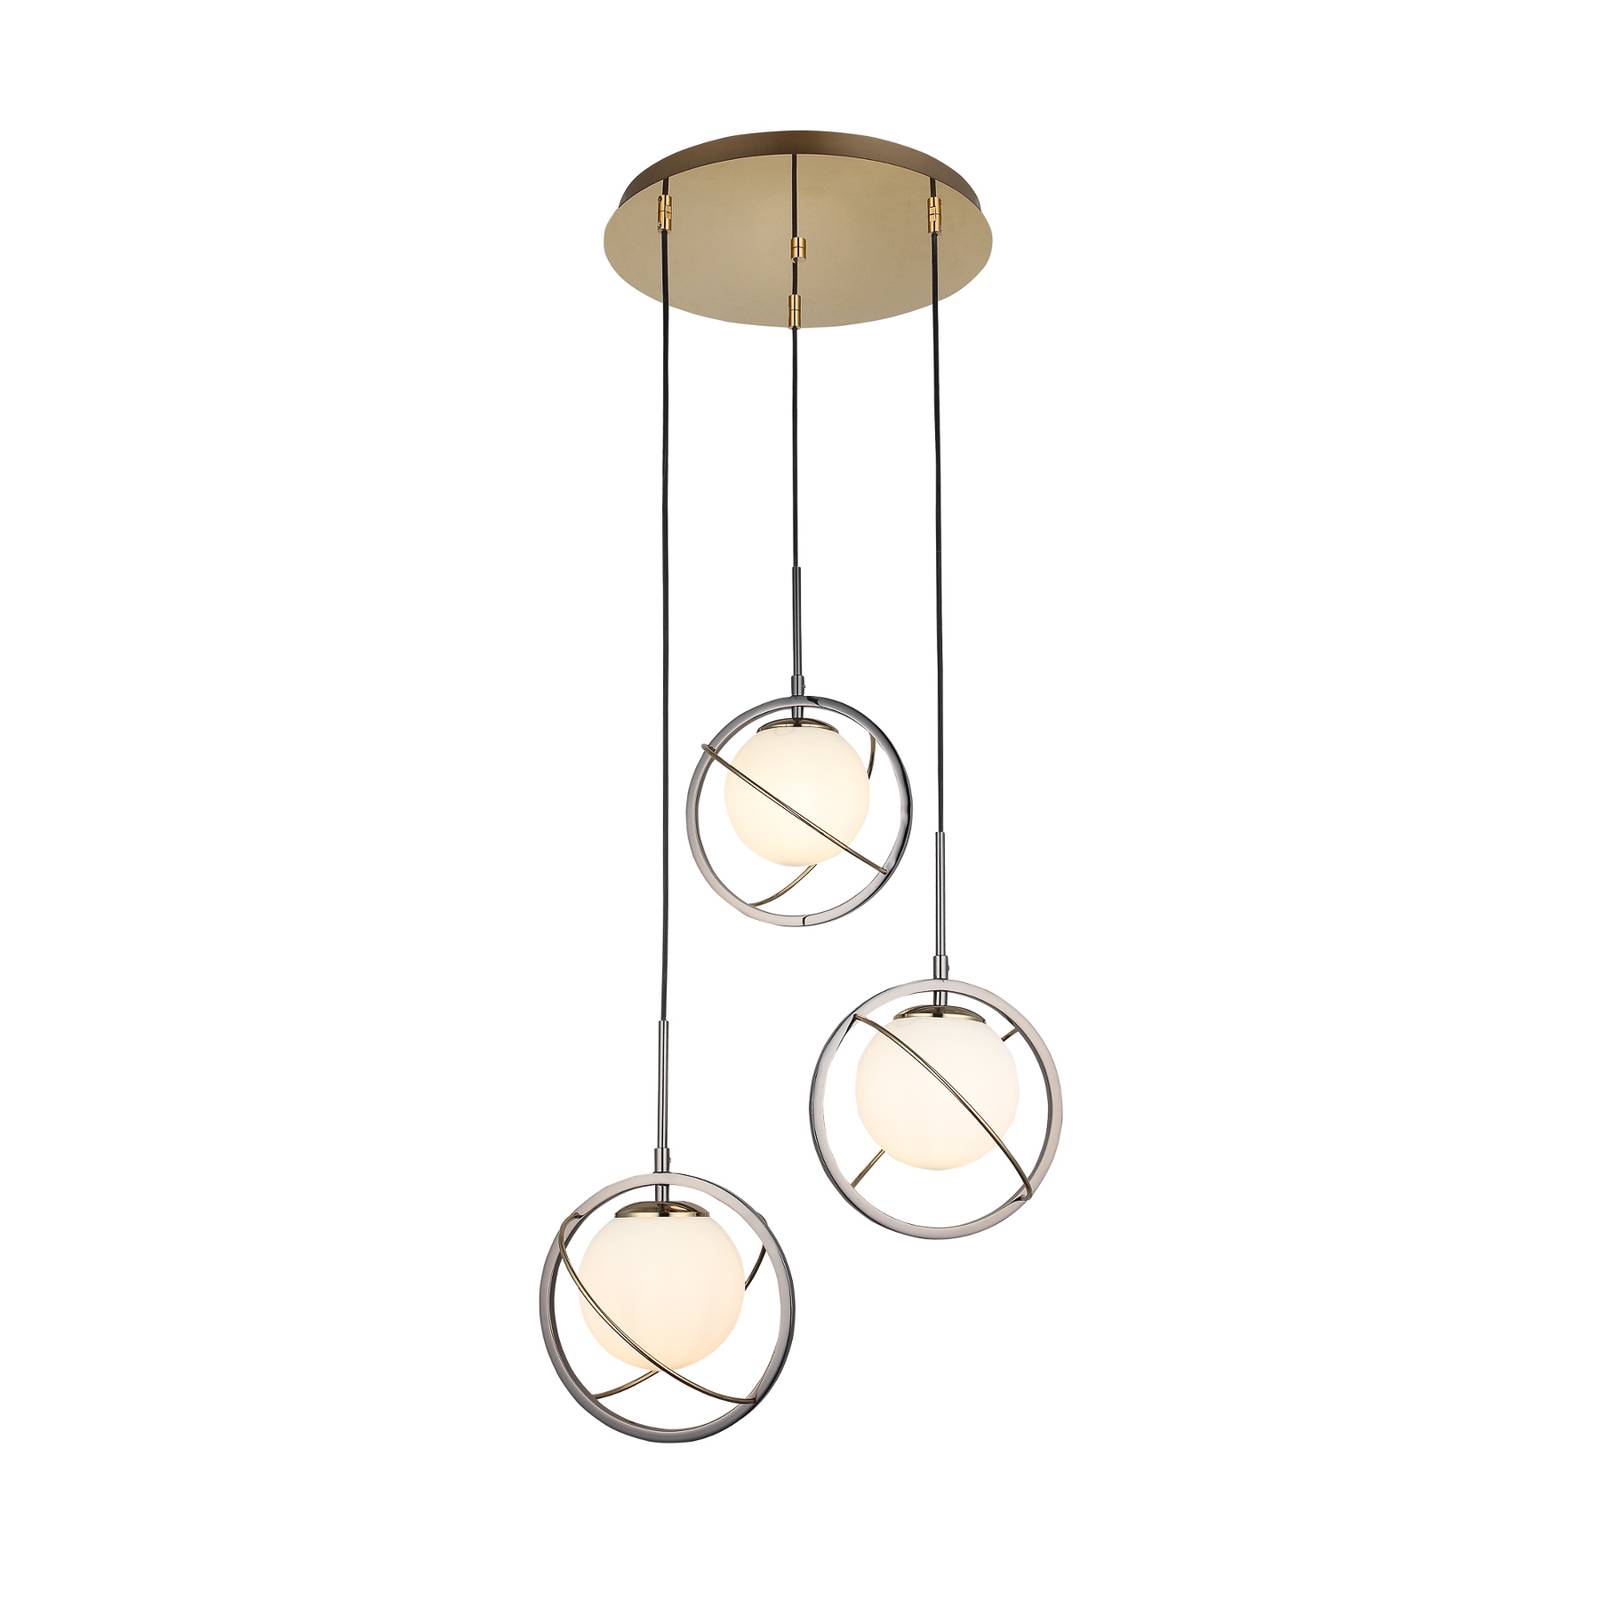 Mondo hængelampe guld/perlesort 3 lyskilder